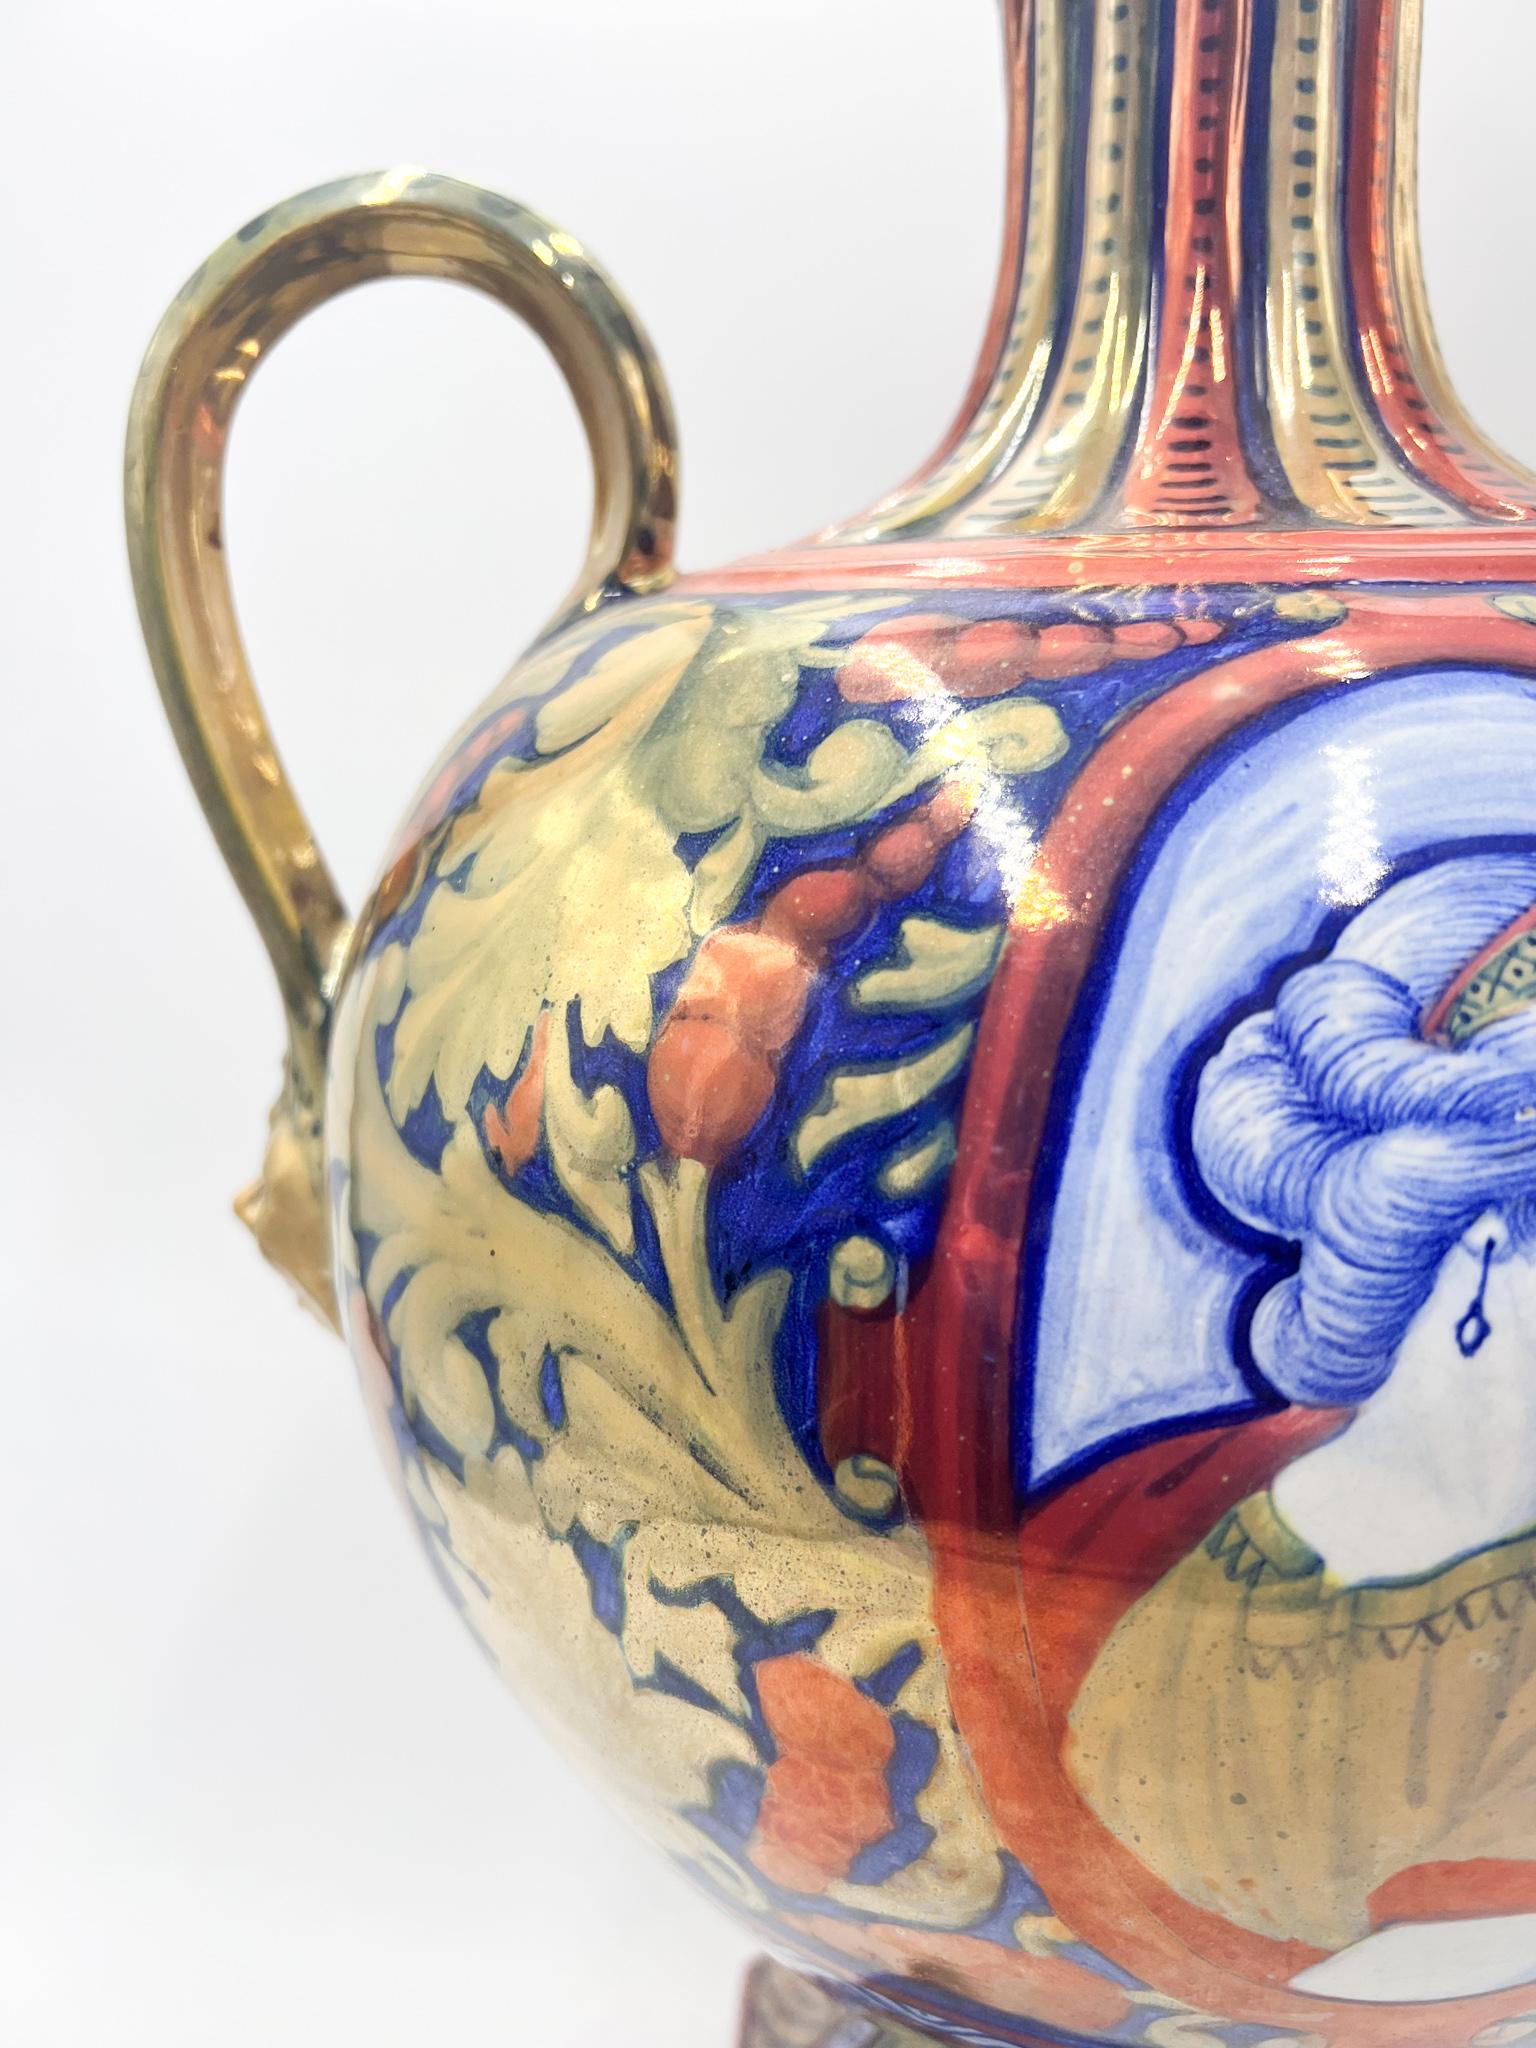 Early 20th Century Ceramic Vase by Gualdo Tadino In Good Condition For Sale In Milano, MI